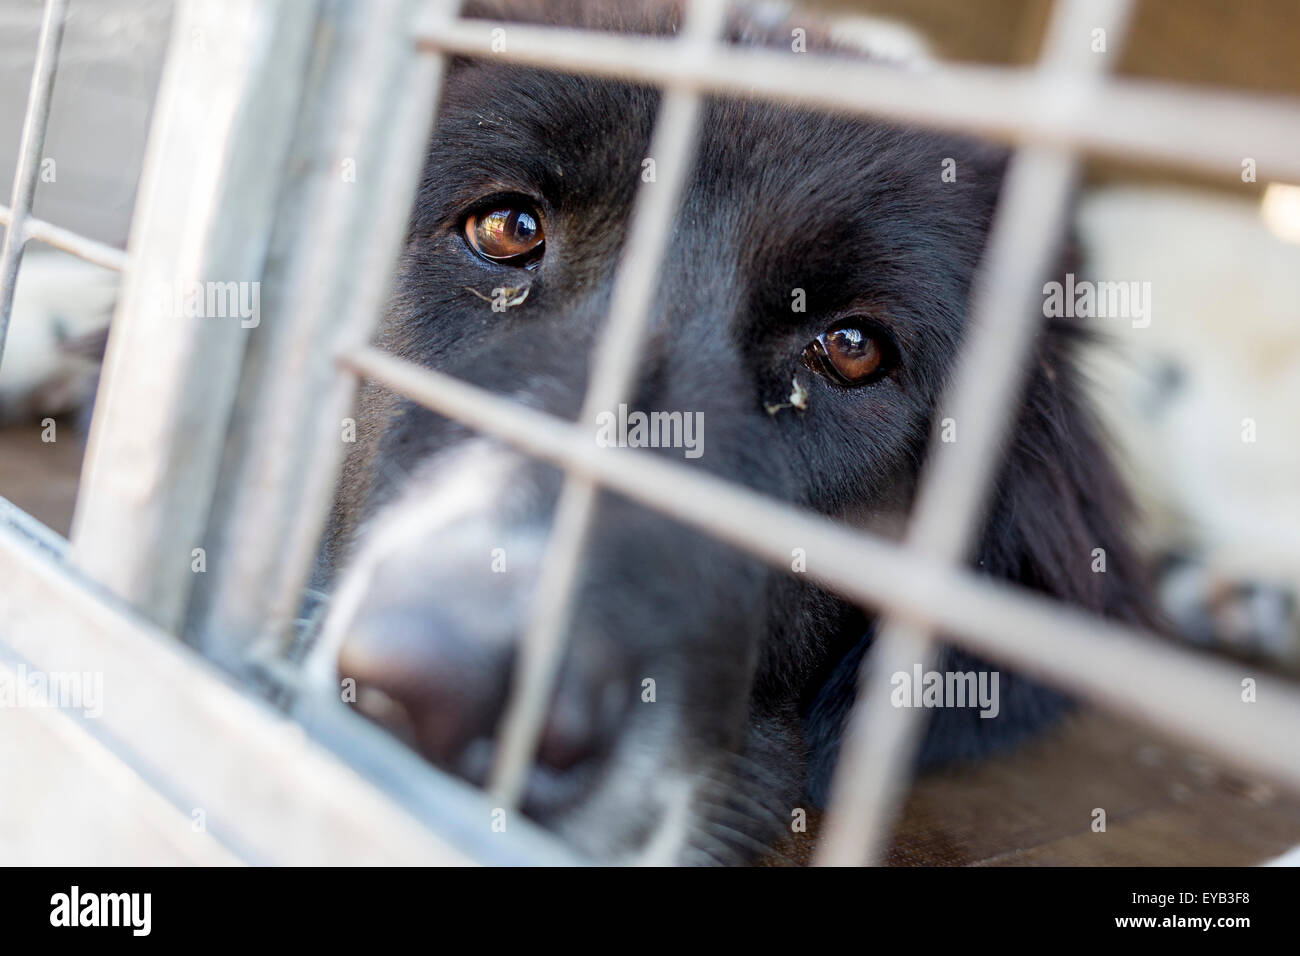 Senzatetto e ownerless triste i cani vengono tenuti in gabbie. Foto Stock